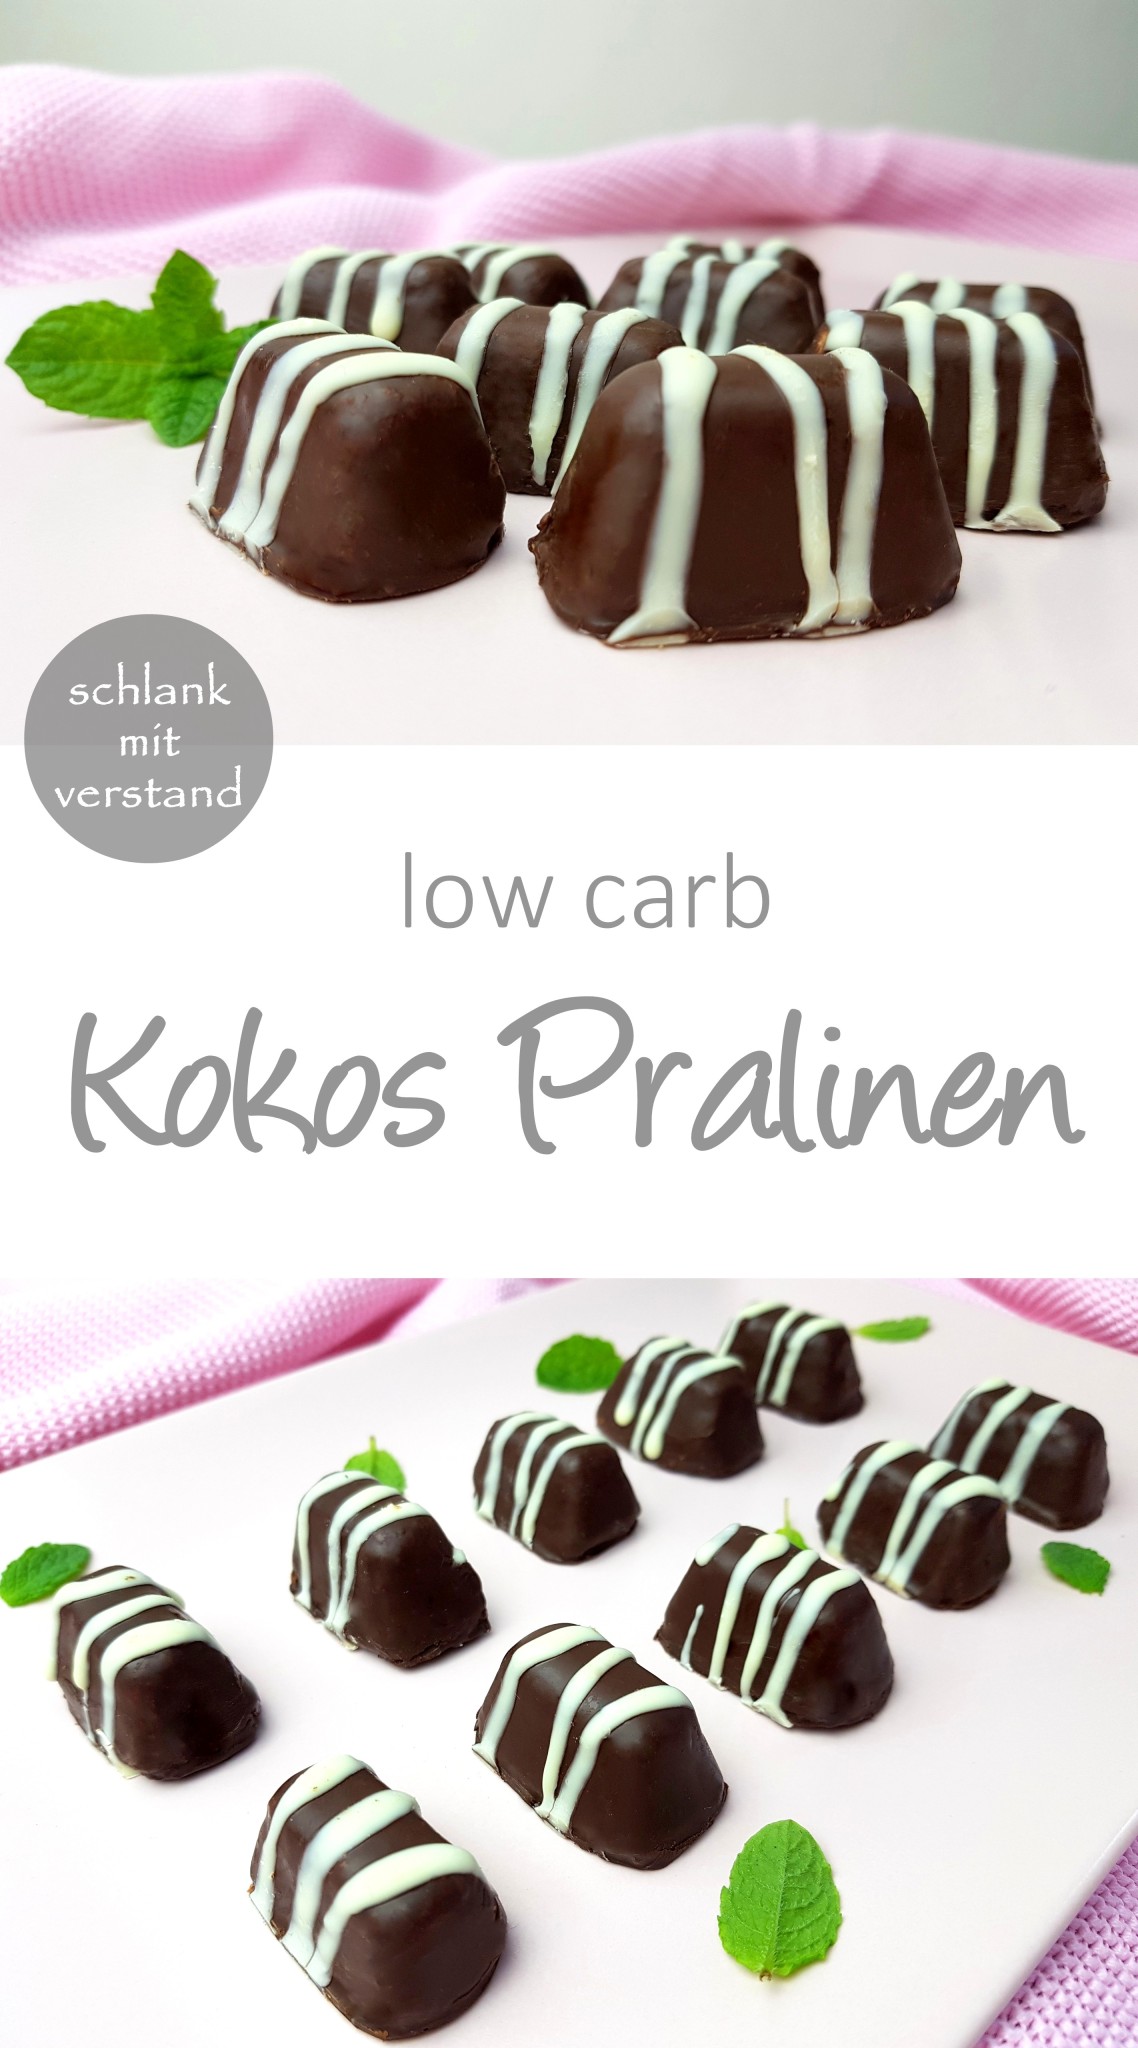 Kokos Pralinen low carb